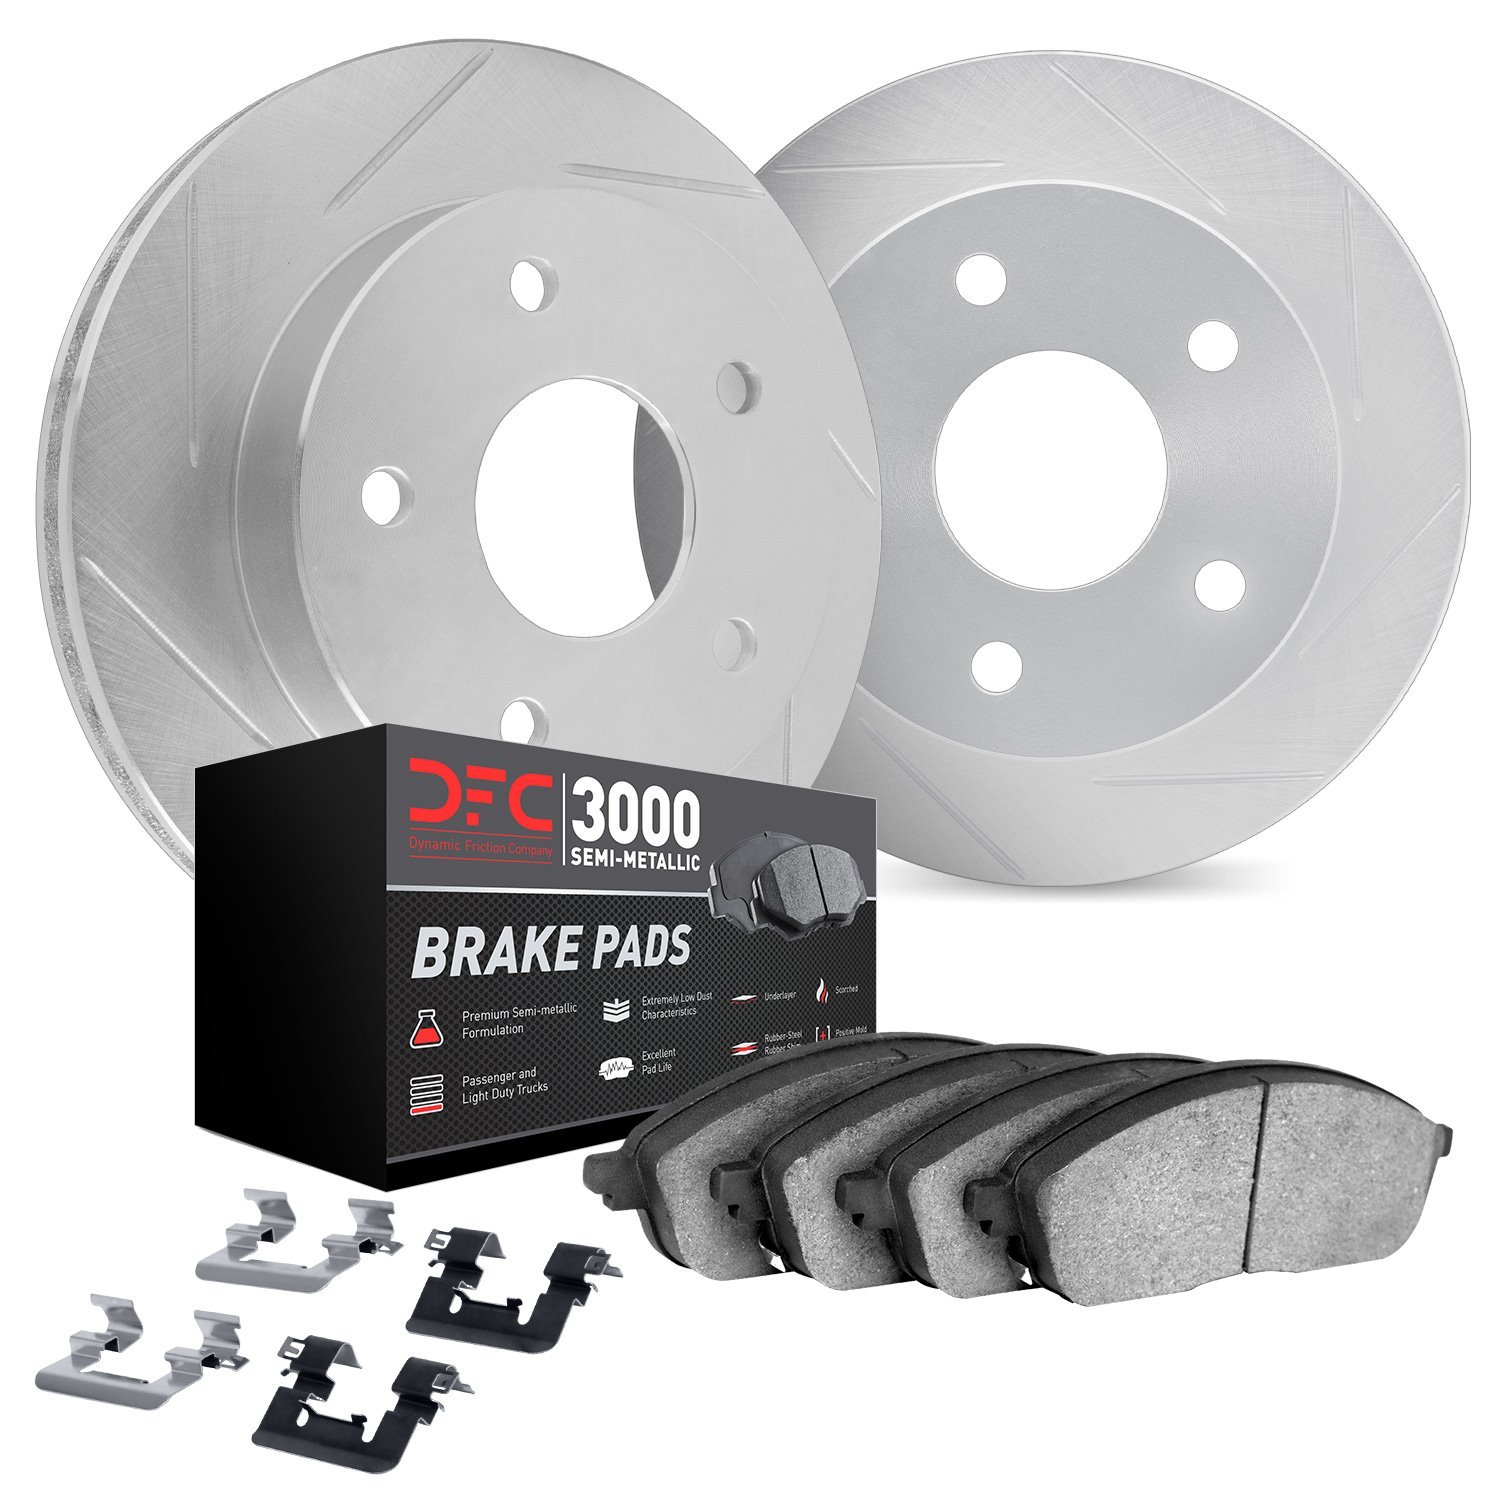 5112-63148 Slotted Brake Rotors with 3000-Series Semi-Metallic Brake Pads Kit & Hardware [Silver], 2013-2019 Mercedes-Benz, Posi